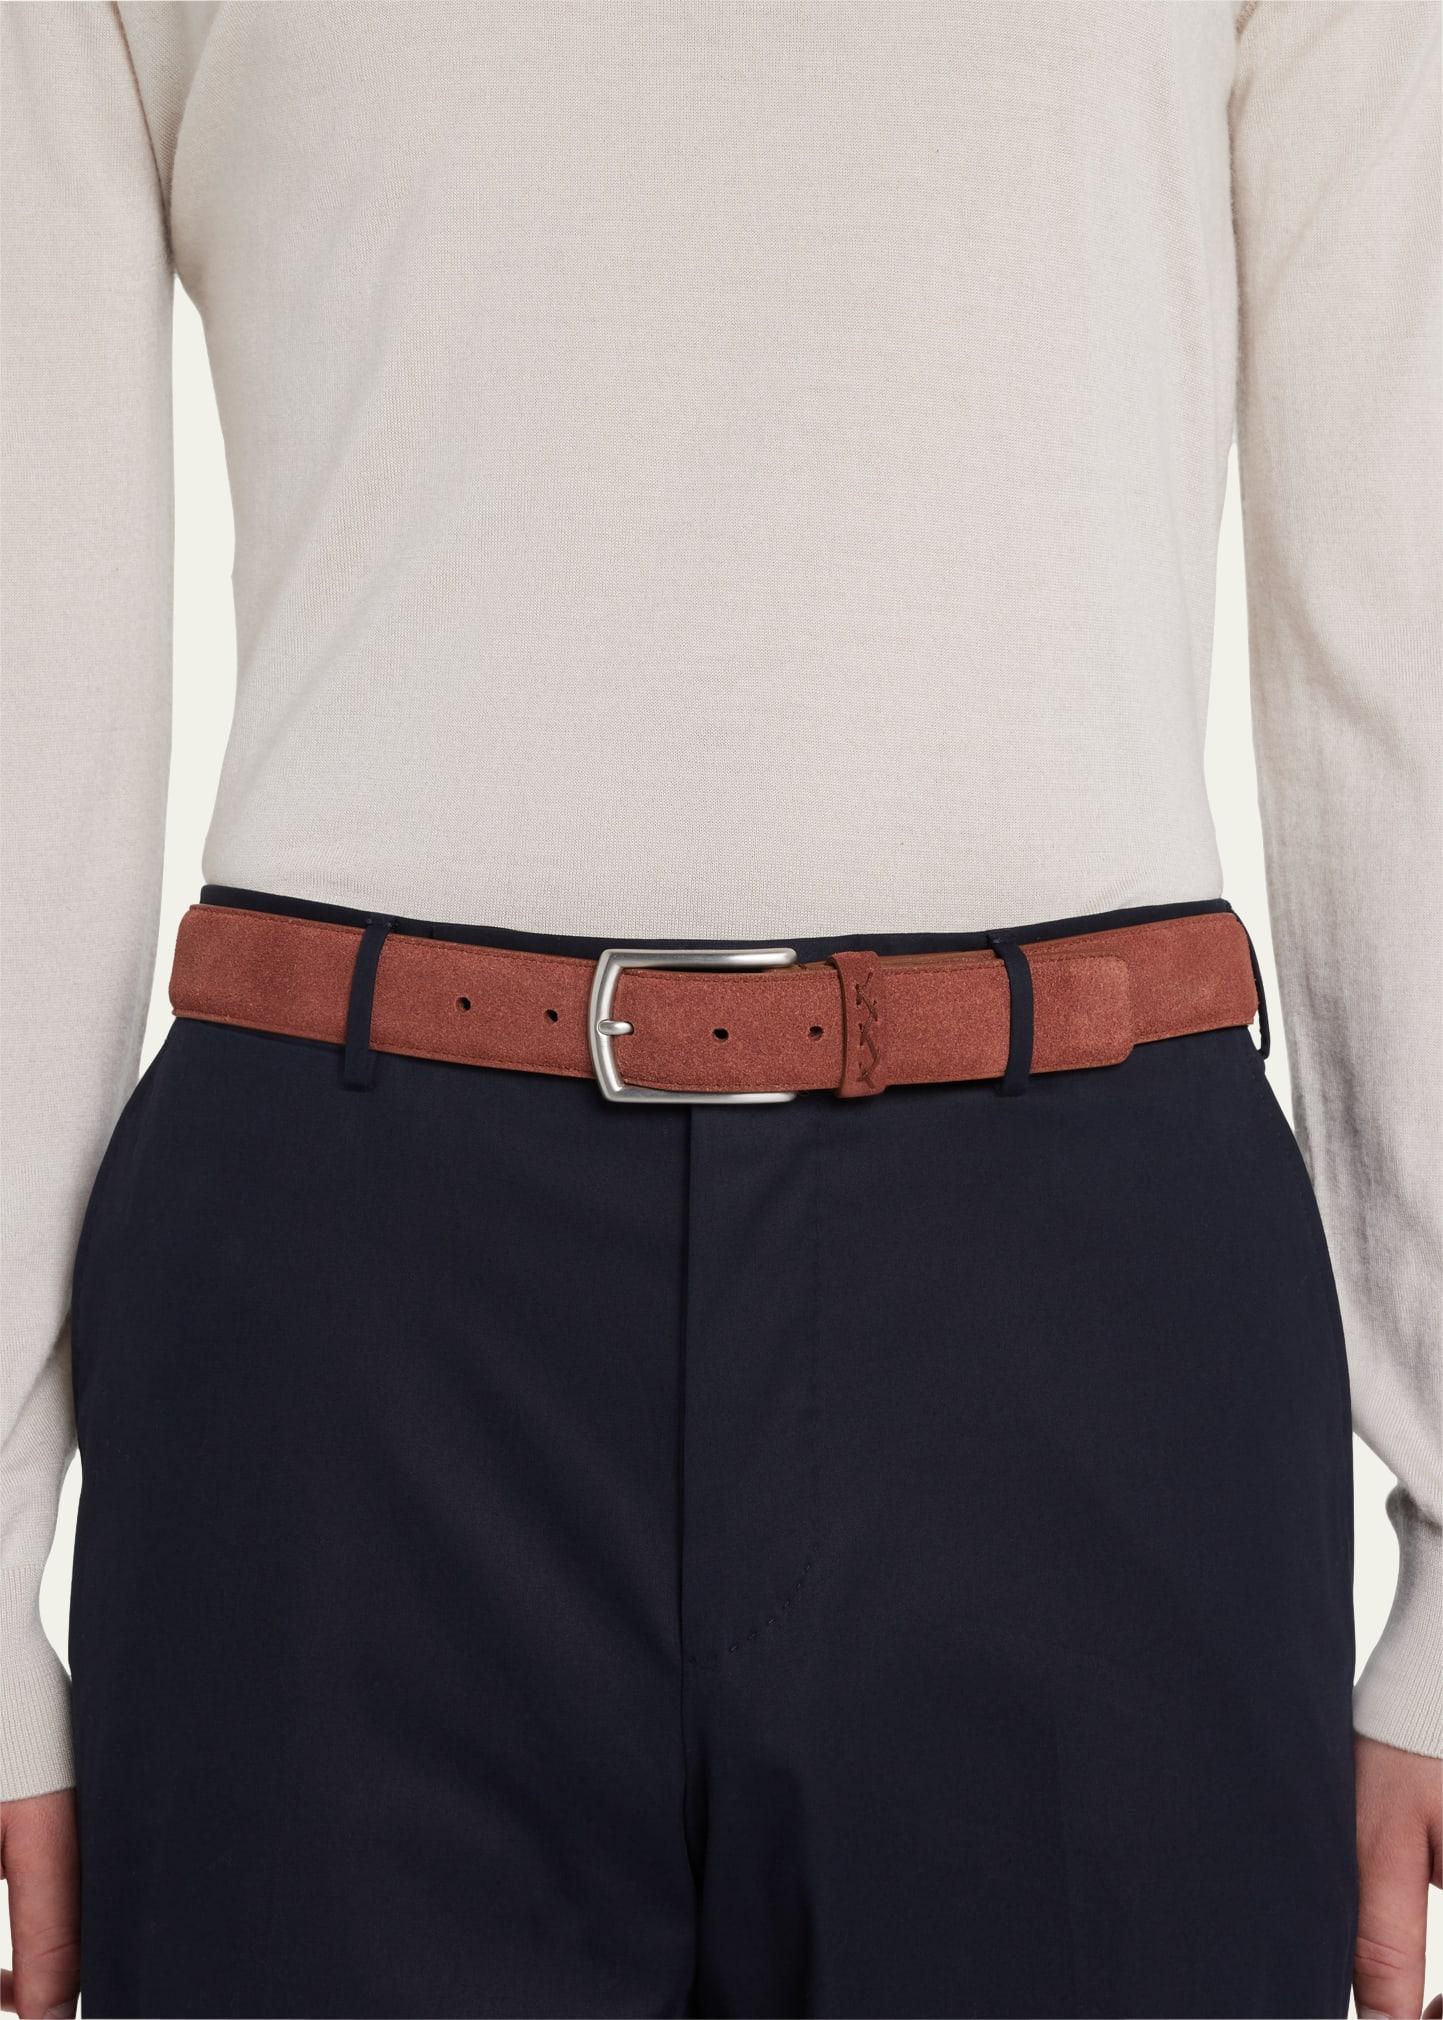 Lux leisurewear triple stitch belt - Zegna - Men